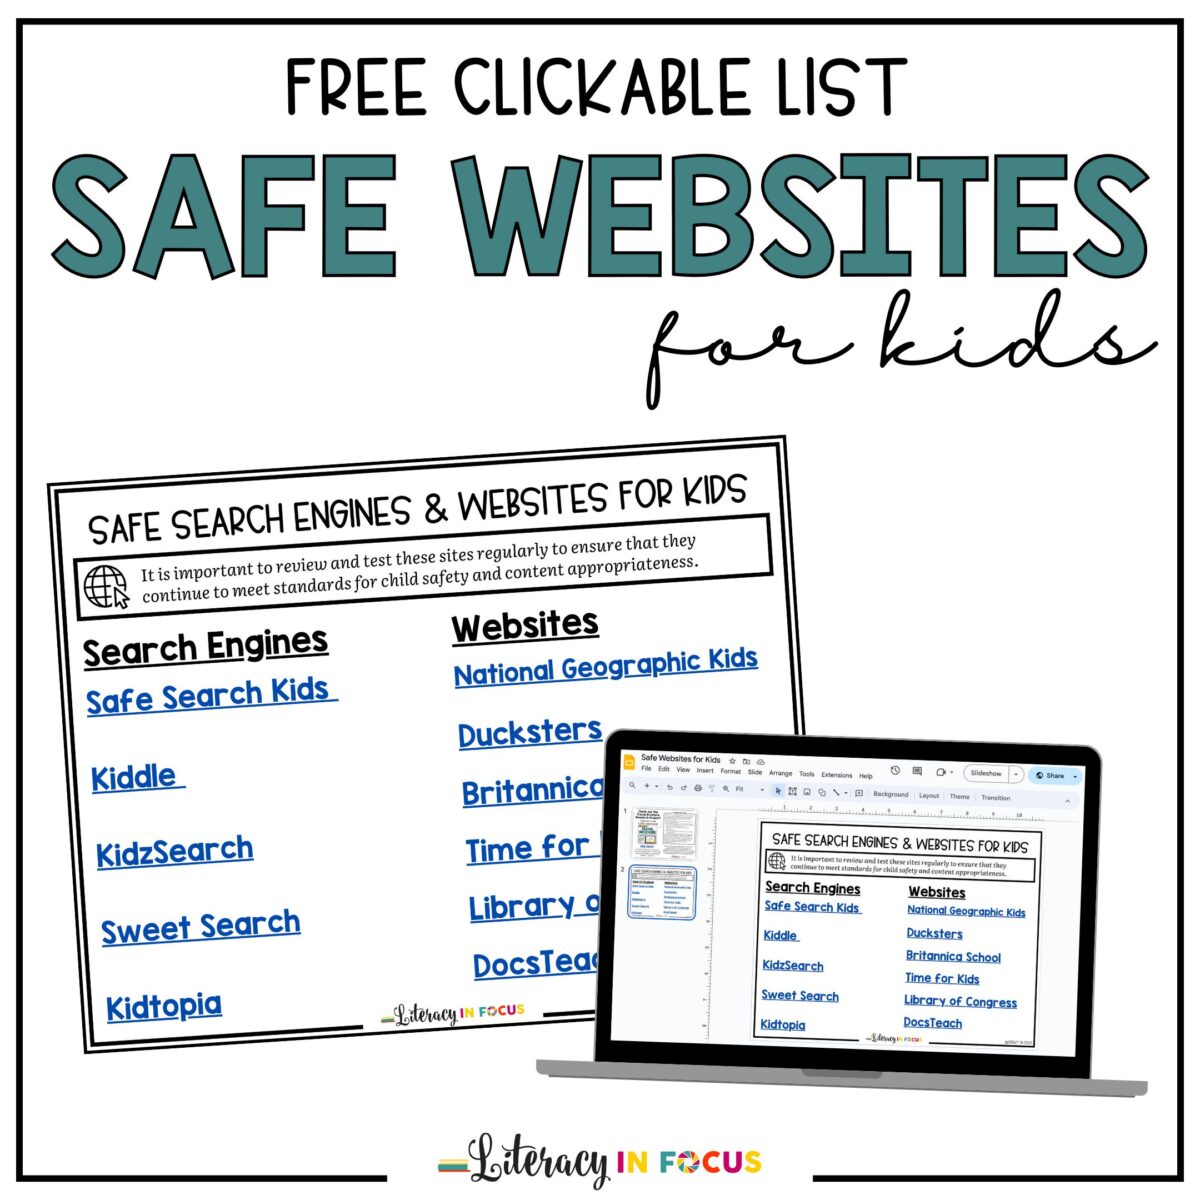 Safe Websites for Kids